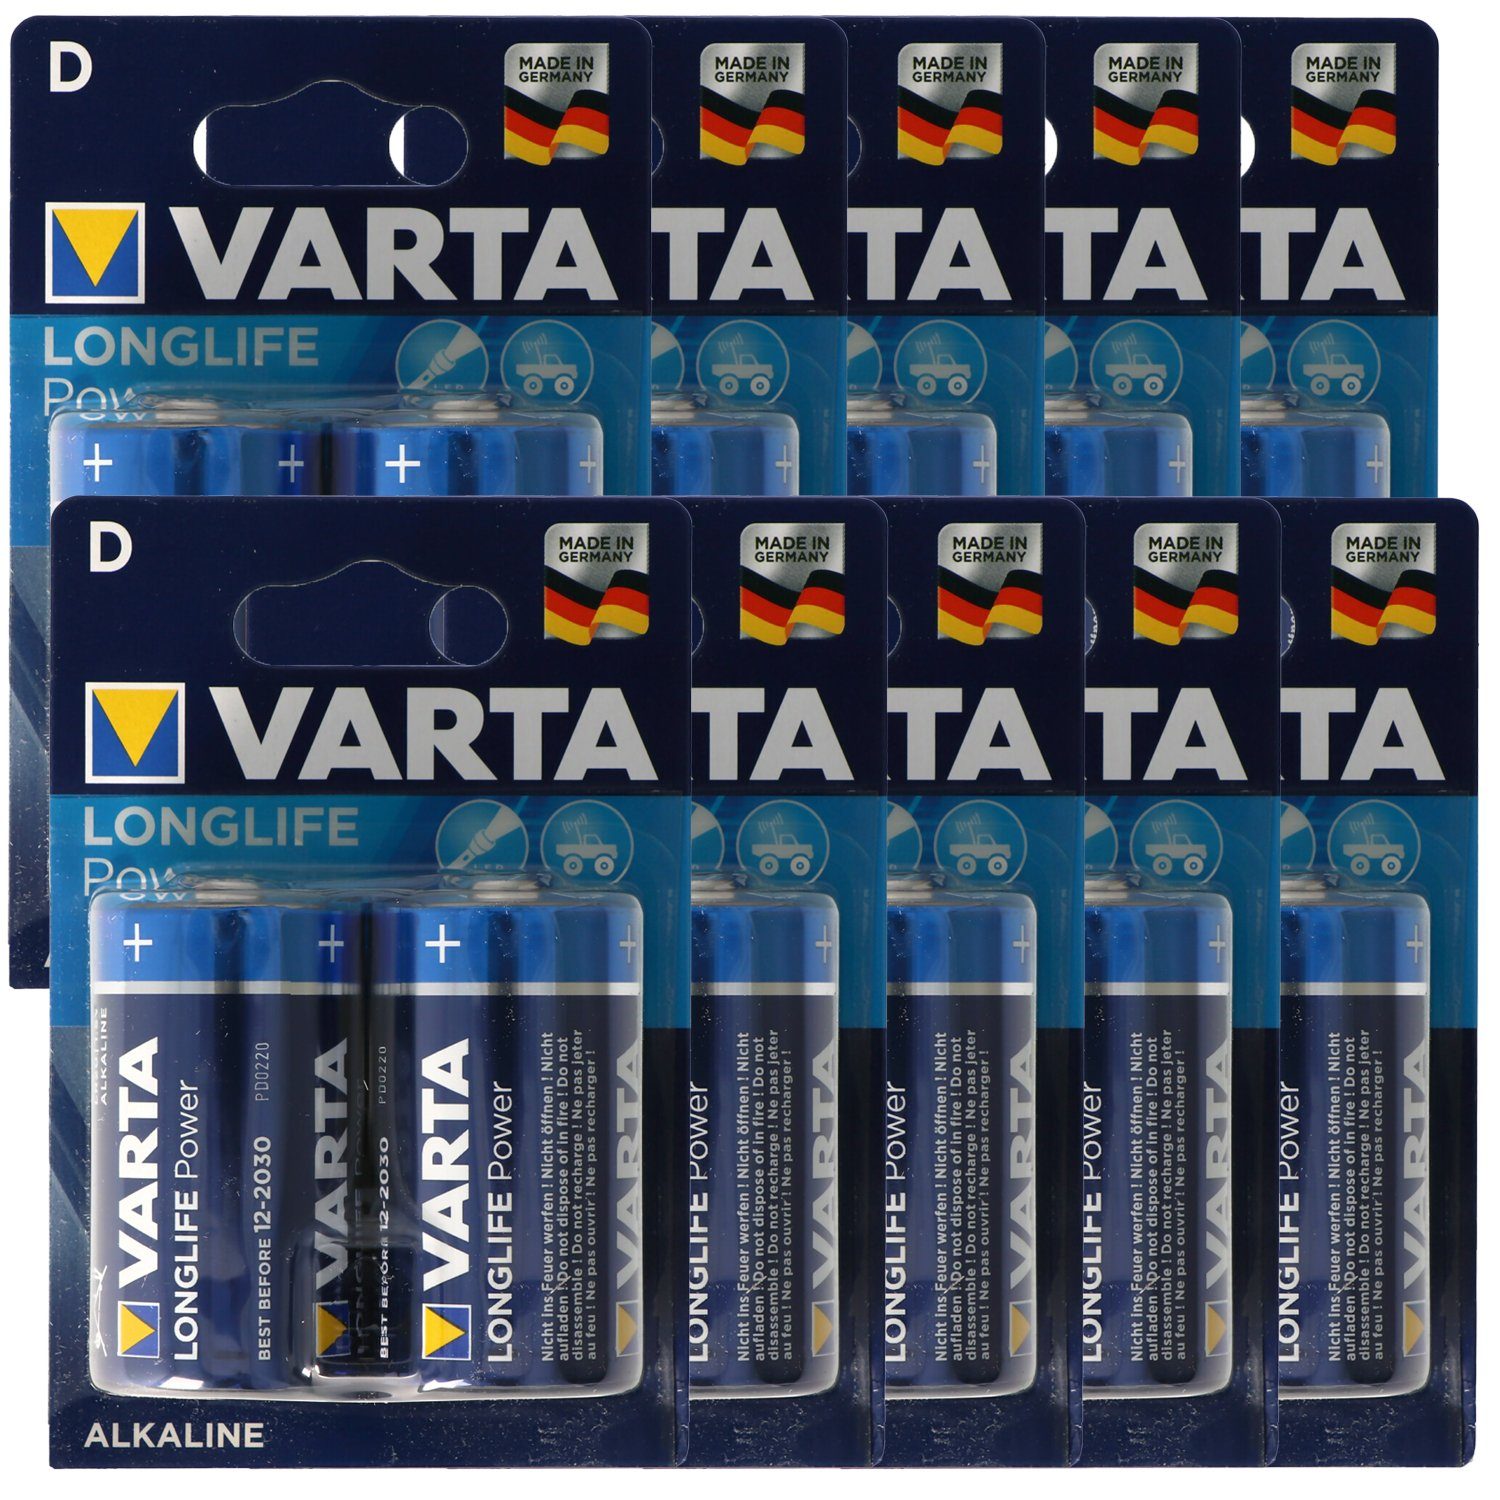 VARTA Varta Longlife Power (ehem. High Energy) Mono D 4920 Batterien 10x 2- Batterie, (1,5 V)